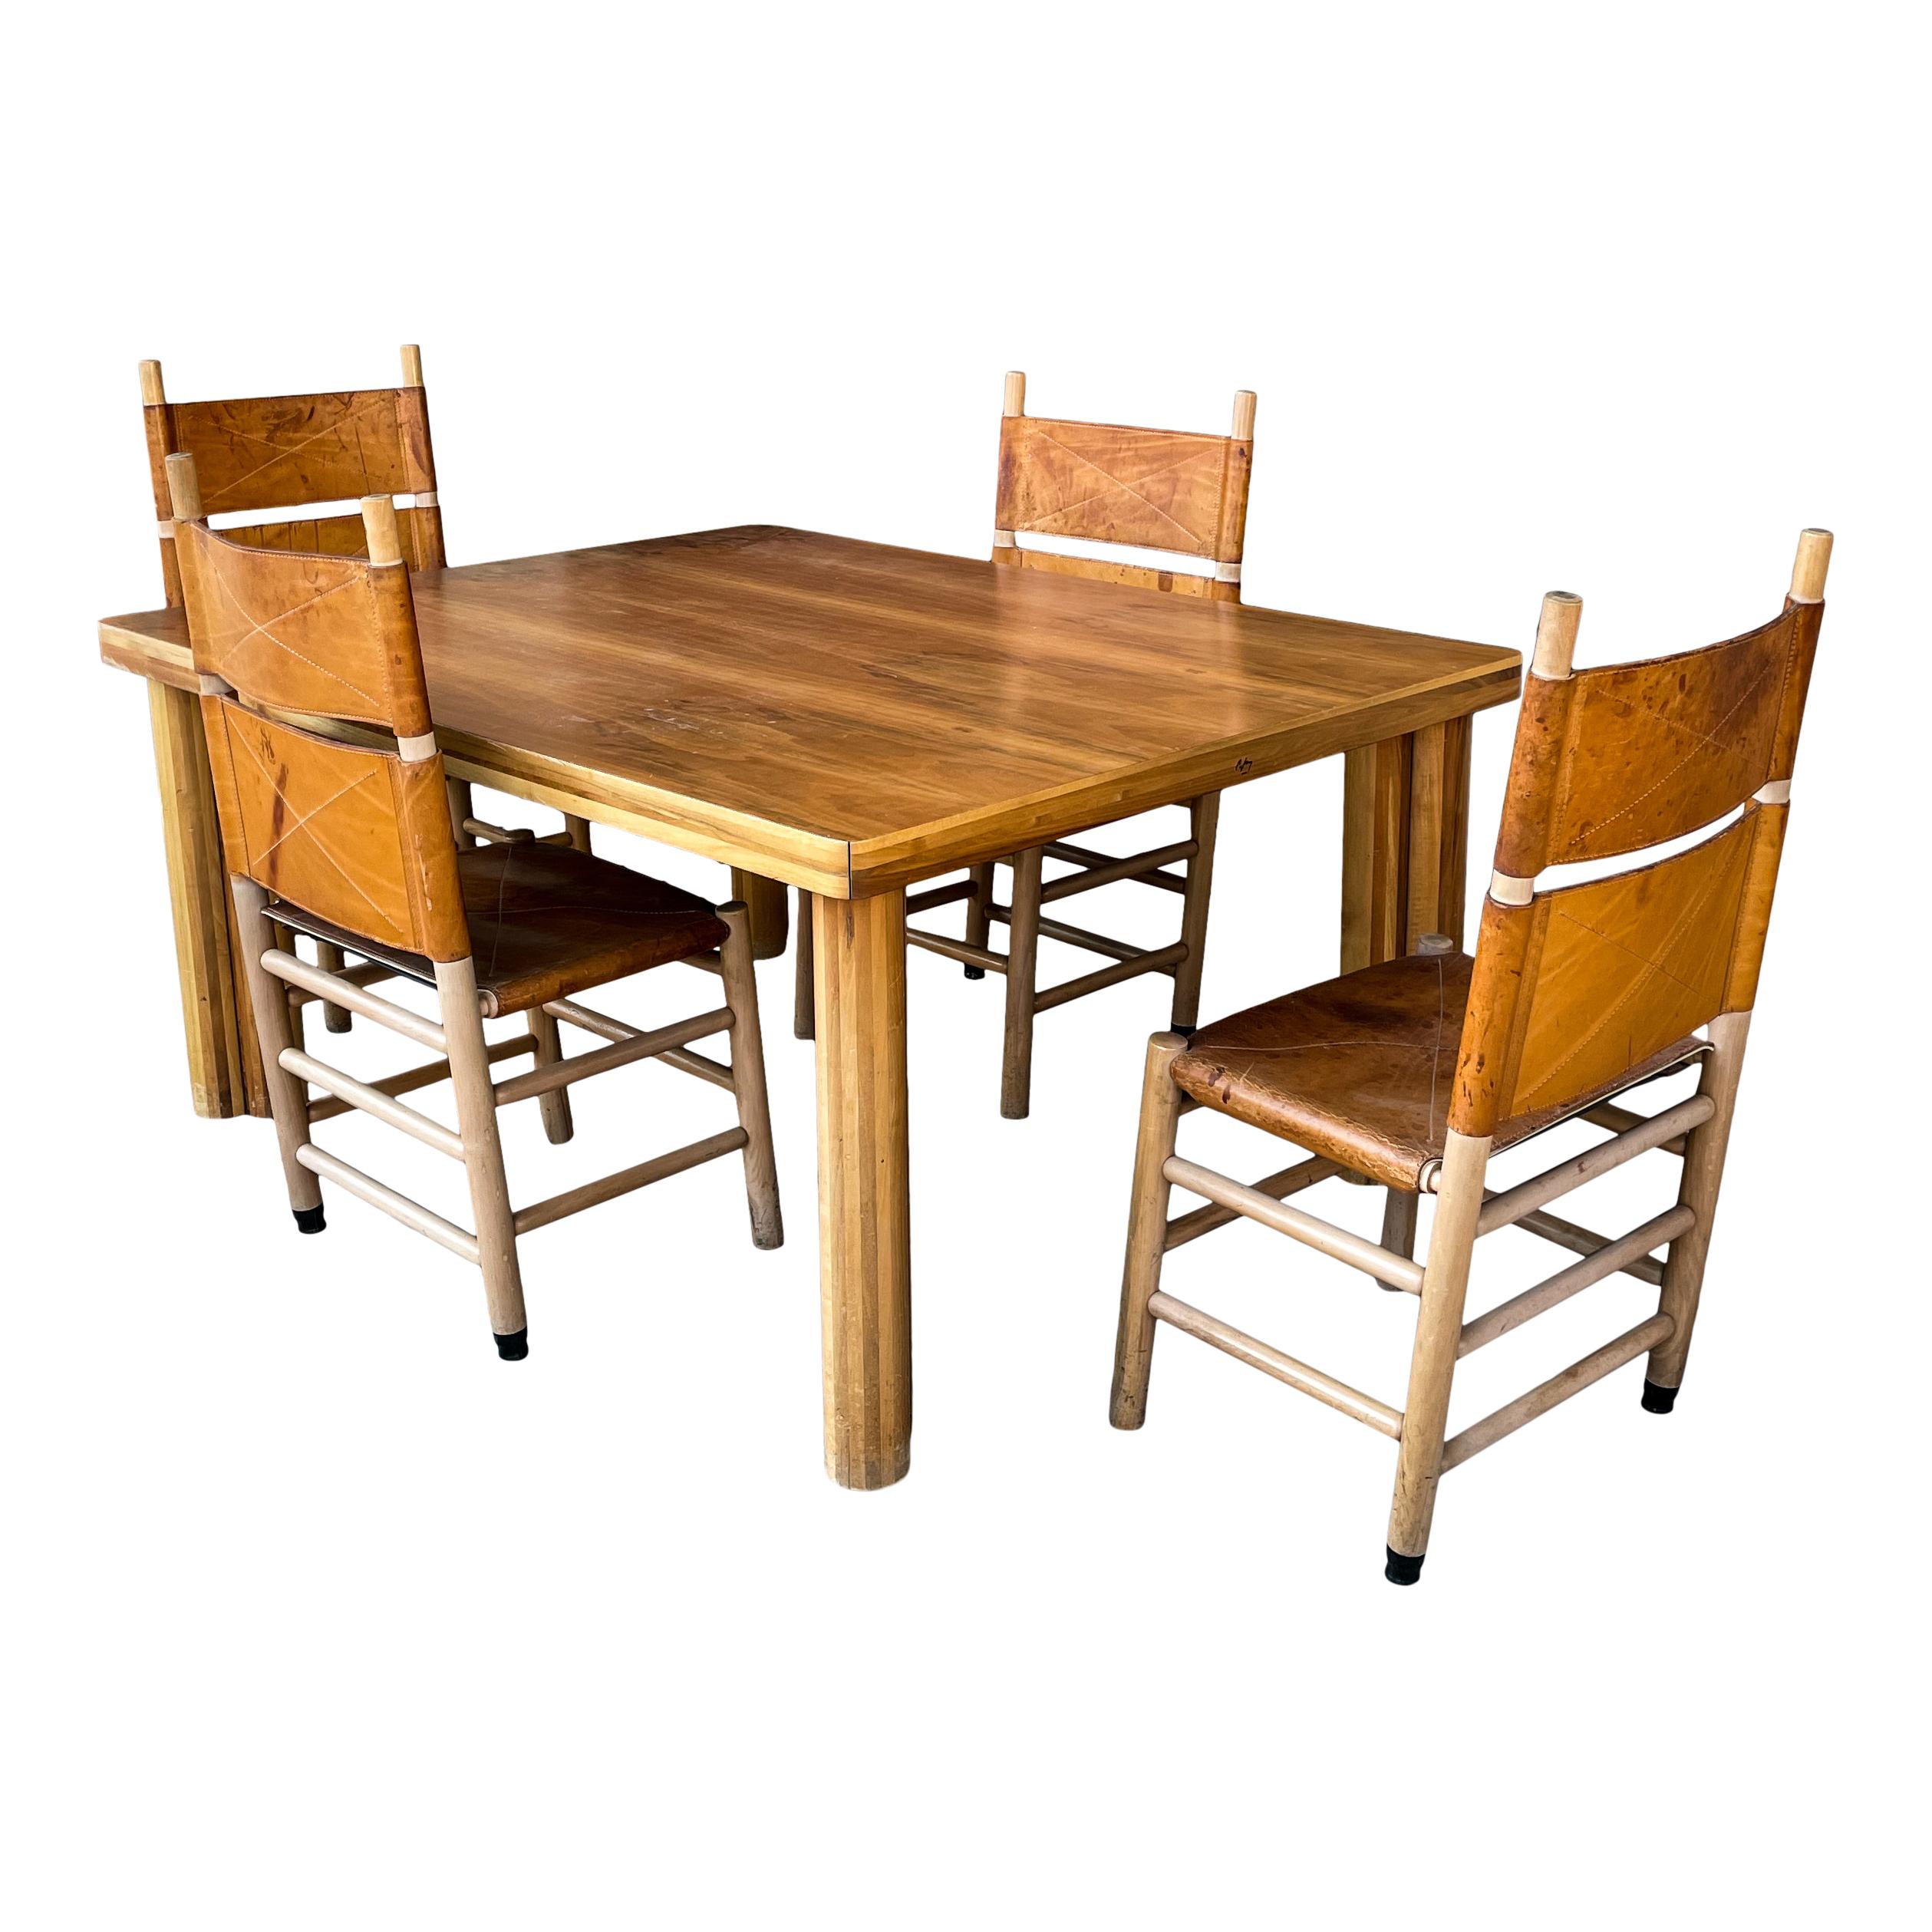 Ensemble de salle à manger Scuderia, conçu par Carlo Scarpa pour le fabricant italien Bernini en 1977.

Composé de 5 chaises de salle à manger mod. 783 